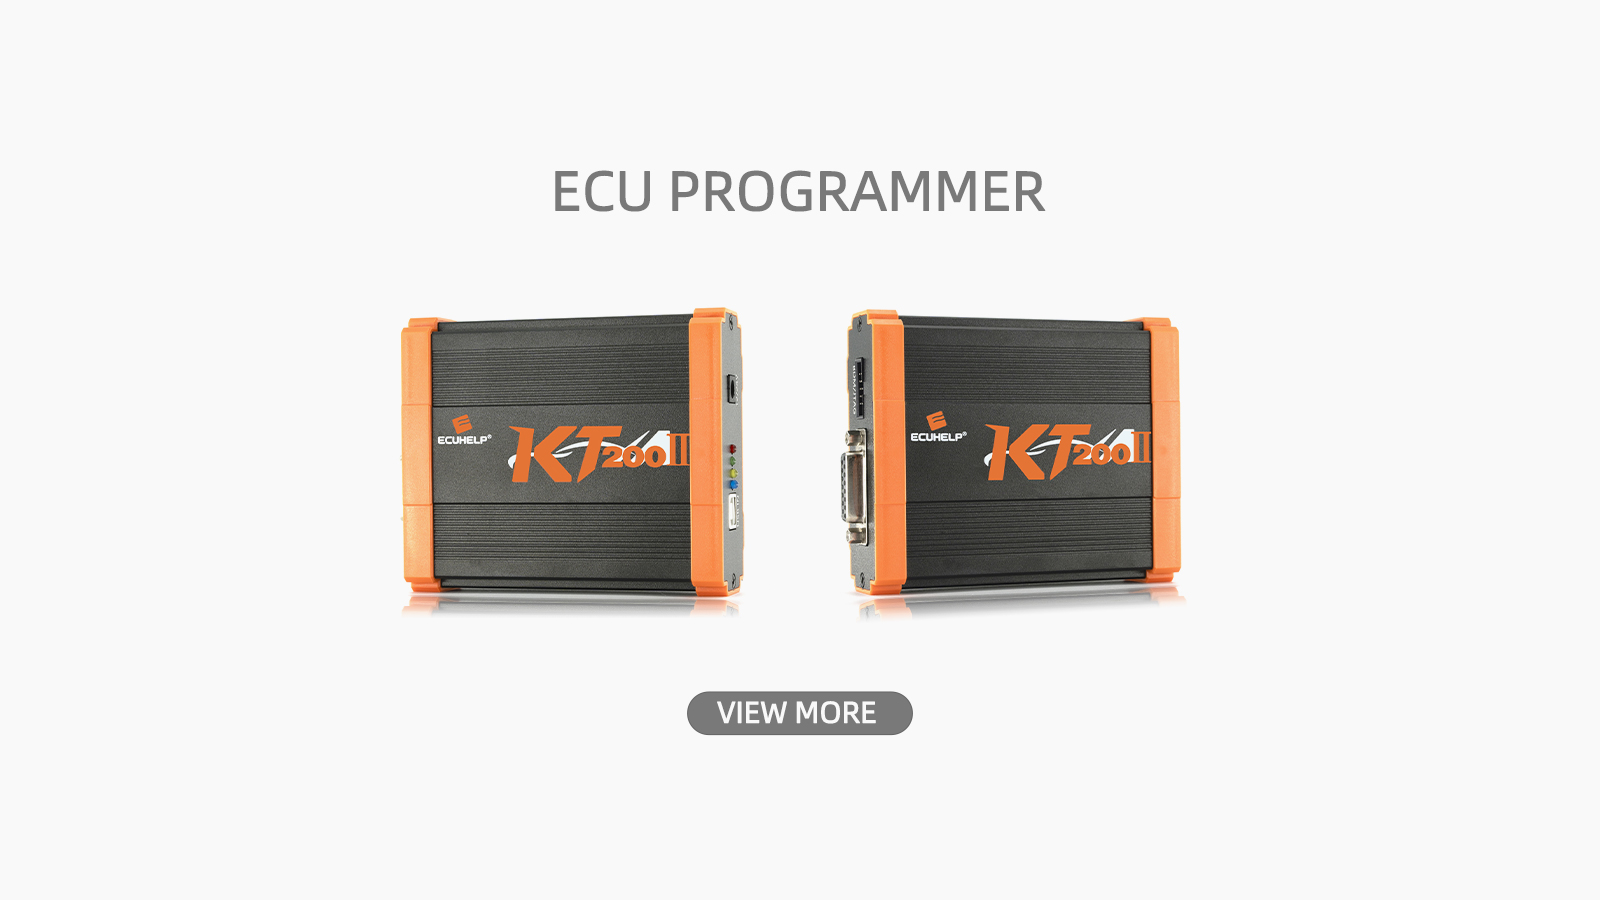 KT200 KT200II ECU Programmer Using Guidance/Tips